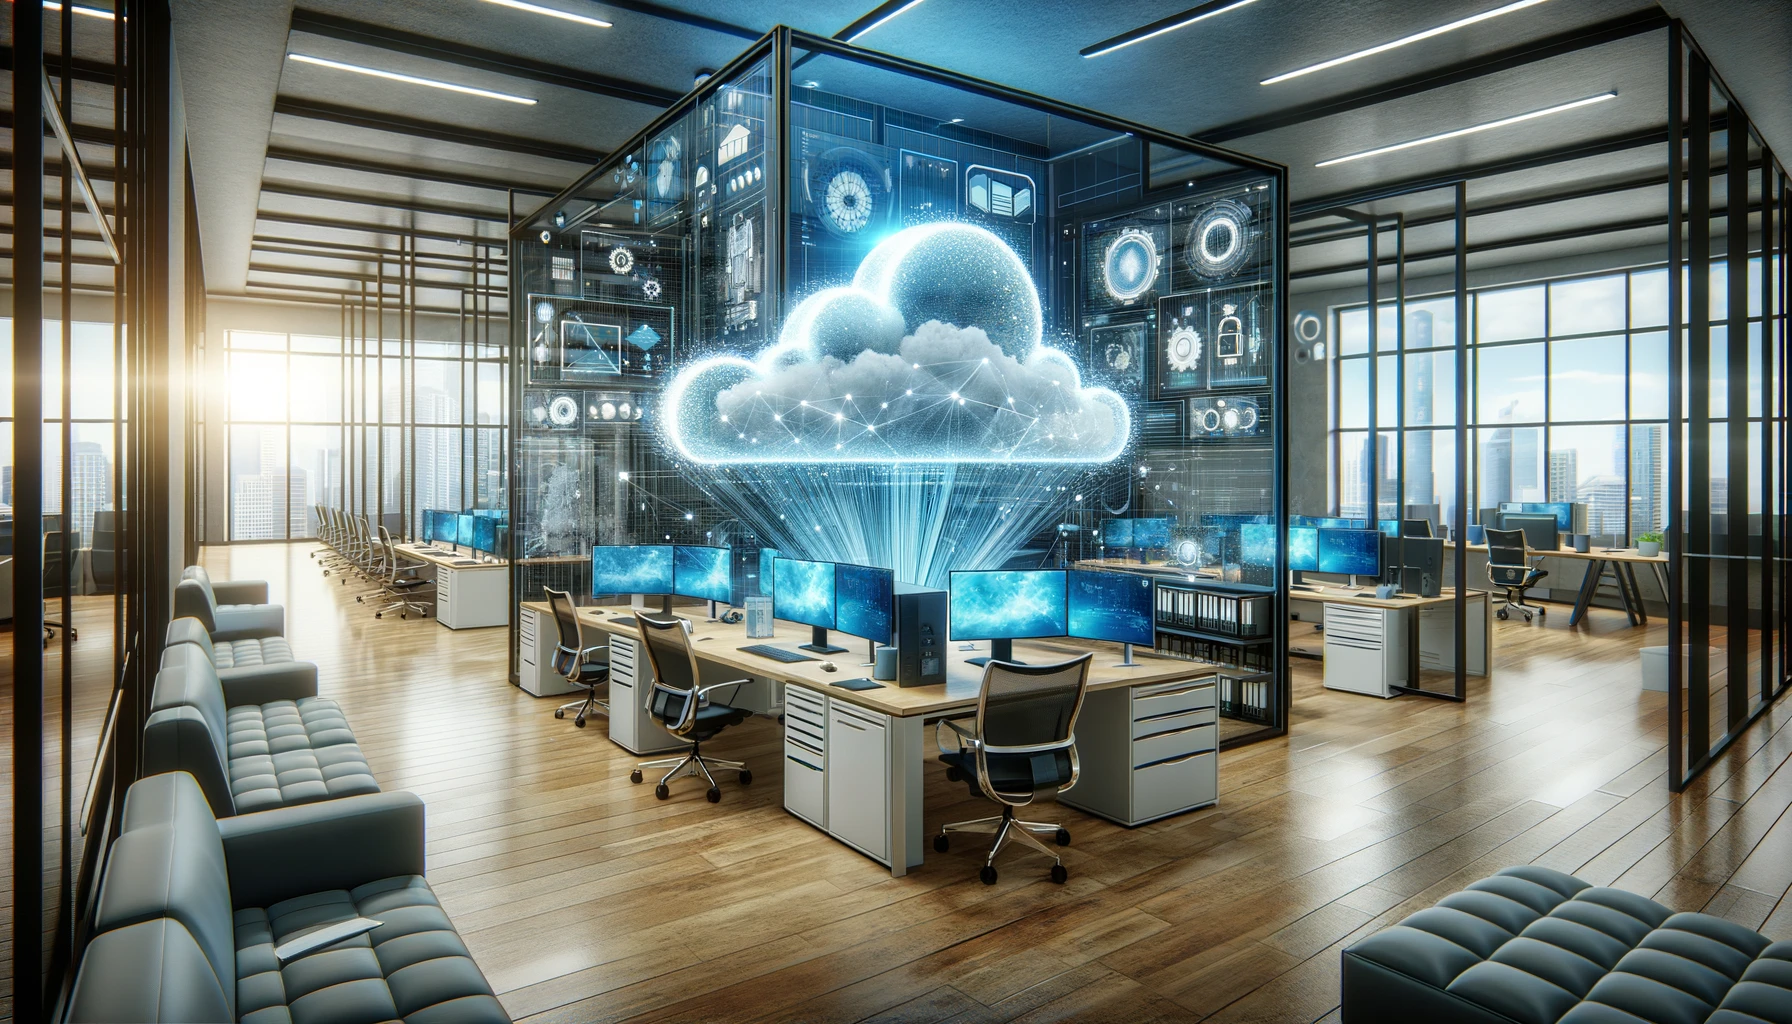 Moderne Büroumgebung mit hochmoderner Technik und Cloud-Visualisierungen, die Innovation und zukunftsorientierte Technologien symbolisieren. Das Büro ist geräumig und zeitgemäß gestaltet, mit schlanken Möbeln und großen Fenstern, die viel natürliches Licht hereinlassen. Digitale Wolken und Hologramme schweben im Raum und unterstreichen den Fokus auf Cloud-Computing.